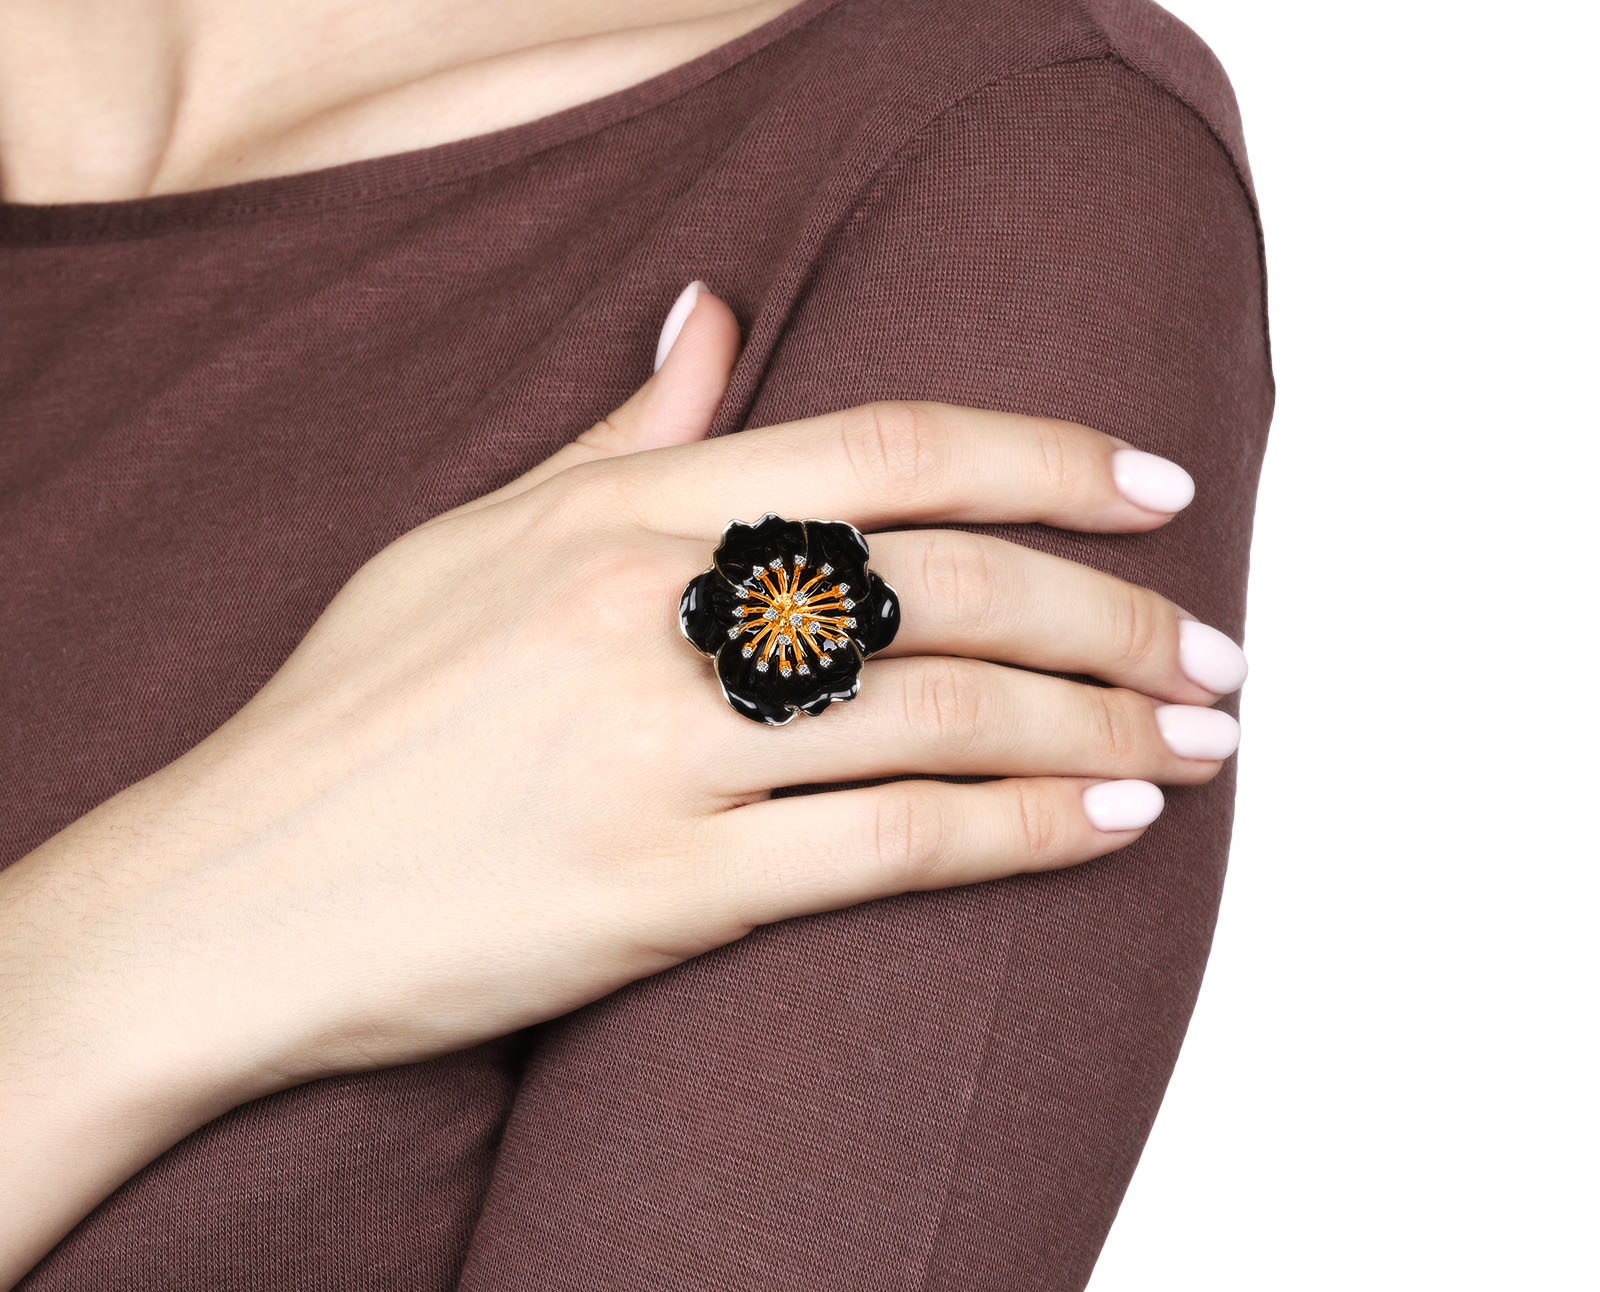 Оригинальное золотое кольцо с бриллиантами 0.29ct Roberto Bravo Black Magic